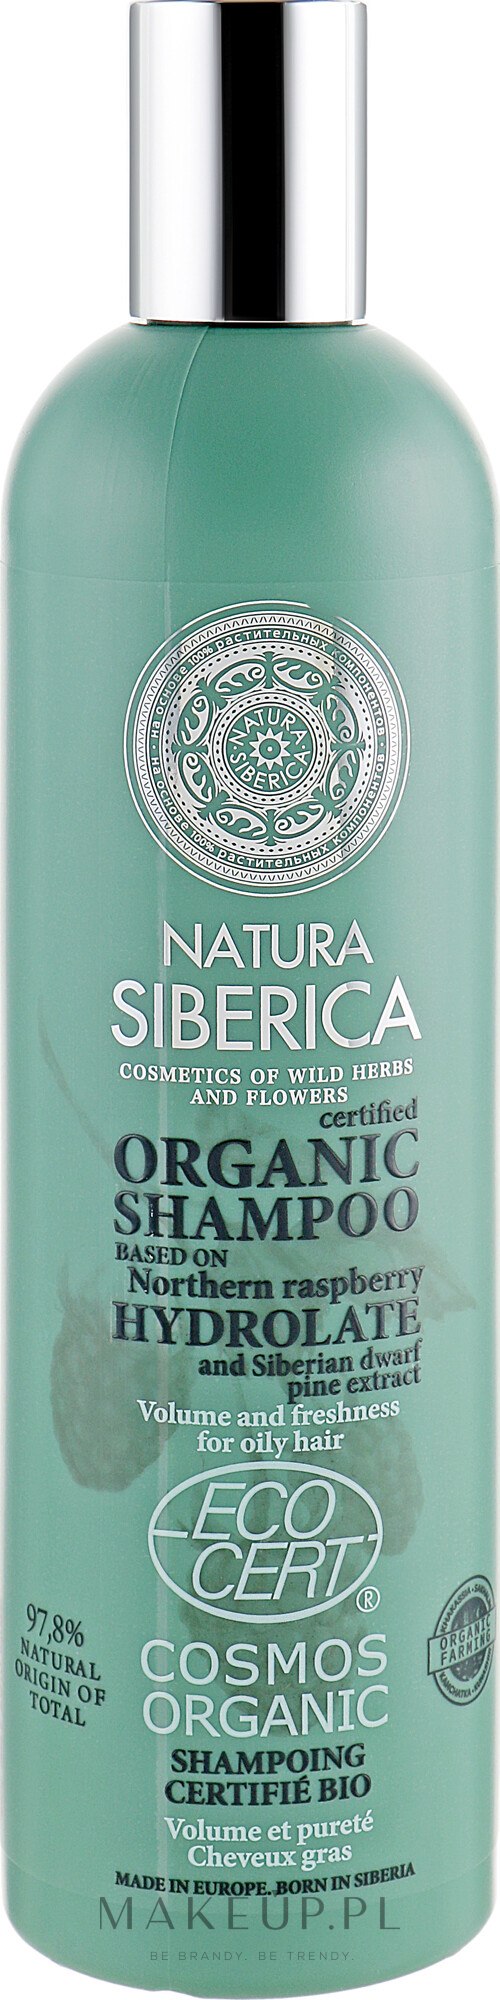 natura siberica szampon włosy przetłuszczające się